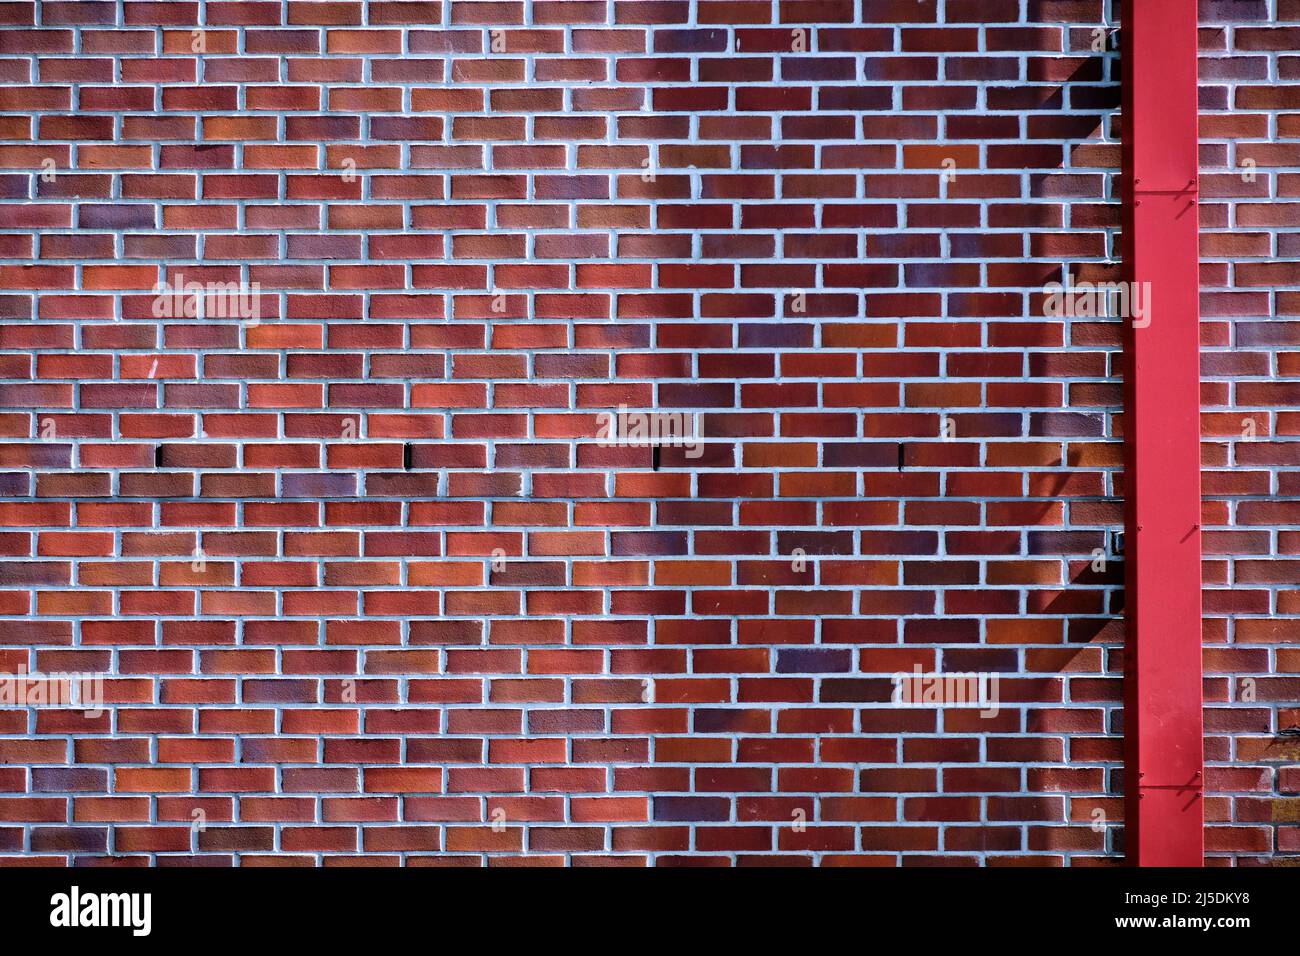 Mur de briques avec briques dans les tons de rouge de l'orange au violet. Le tuyau de caniveau rouge traverse la brique pour offrir un contraste. Banque D'Images